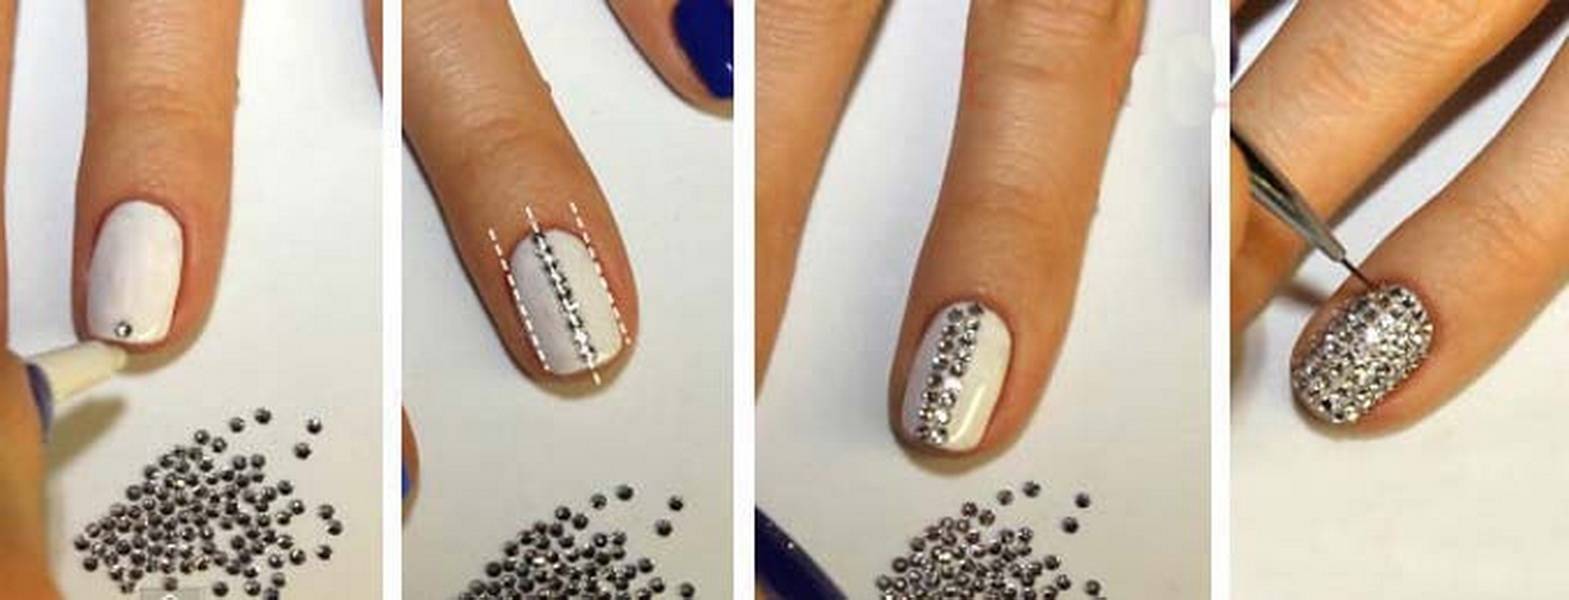 Как клеить стразы на ногти правильно и красиво? — modnail.ru — красивый маникюр